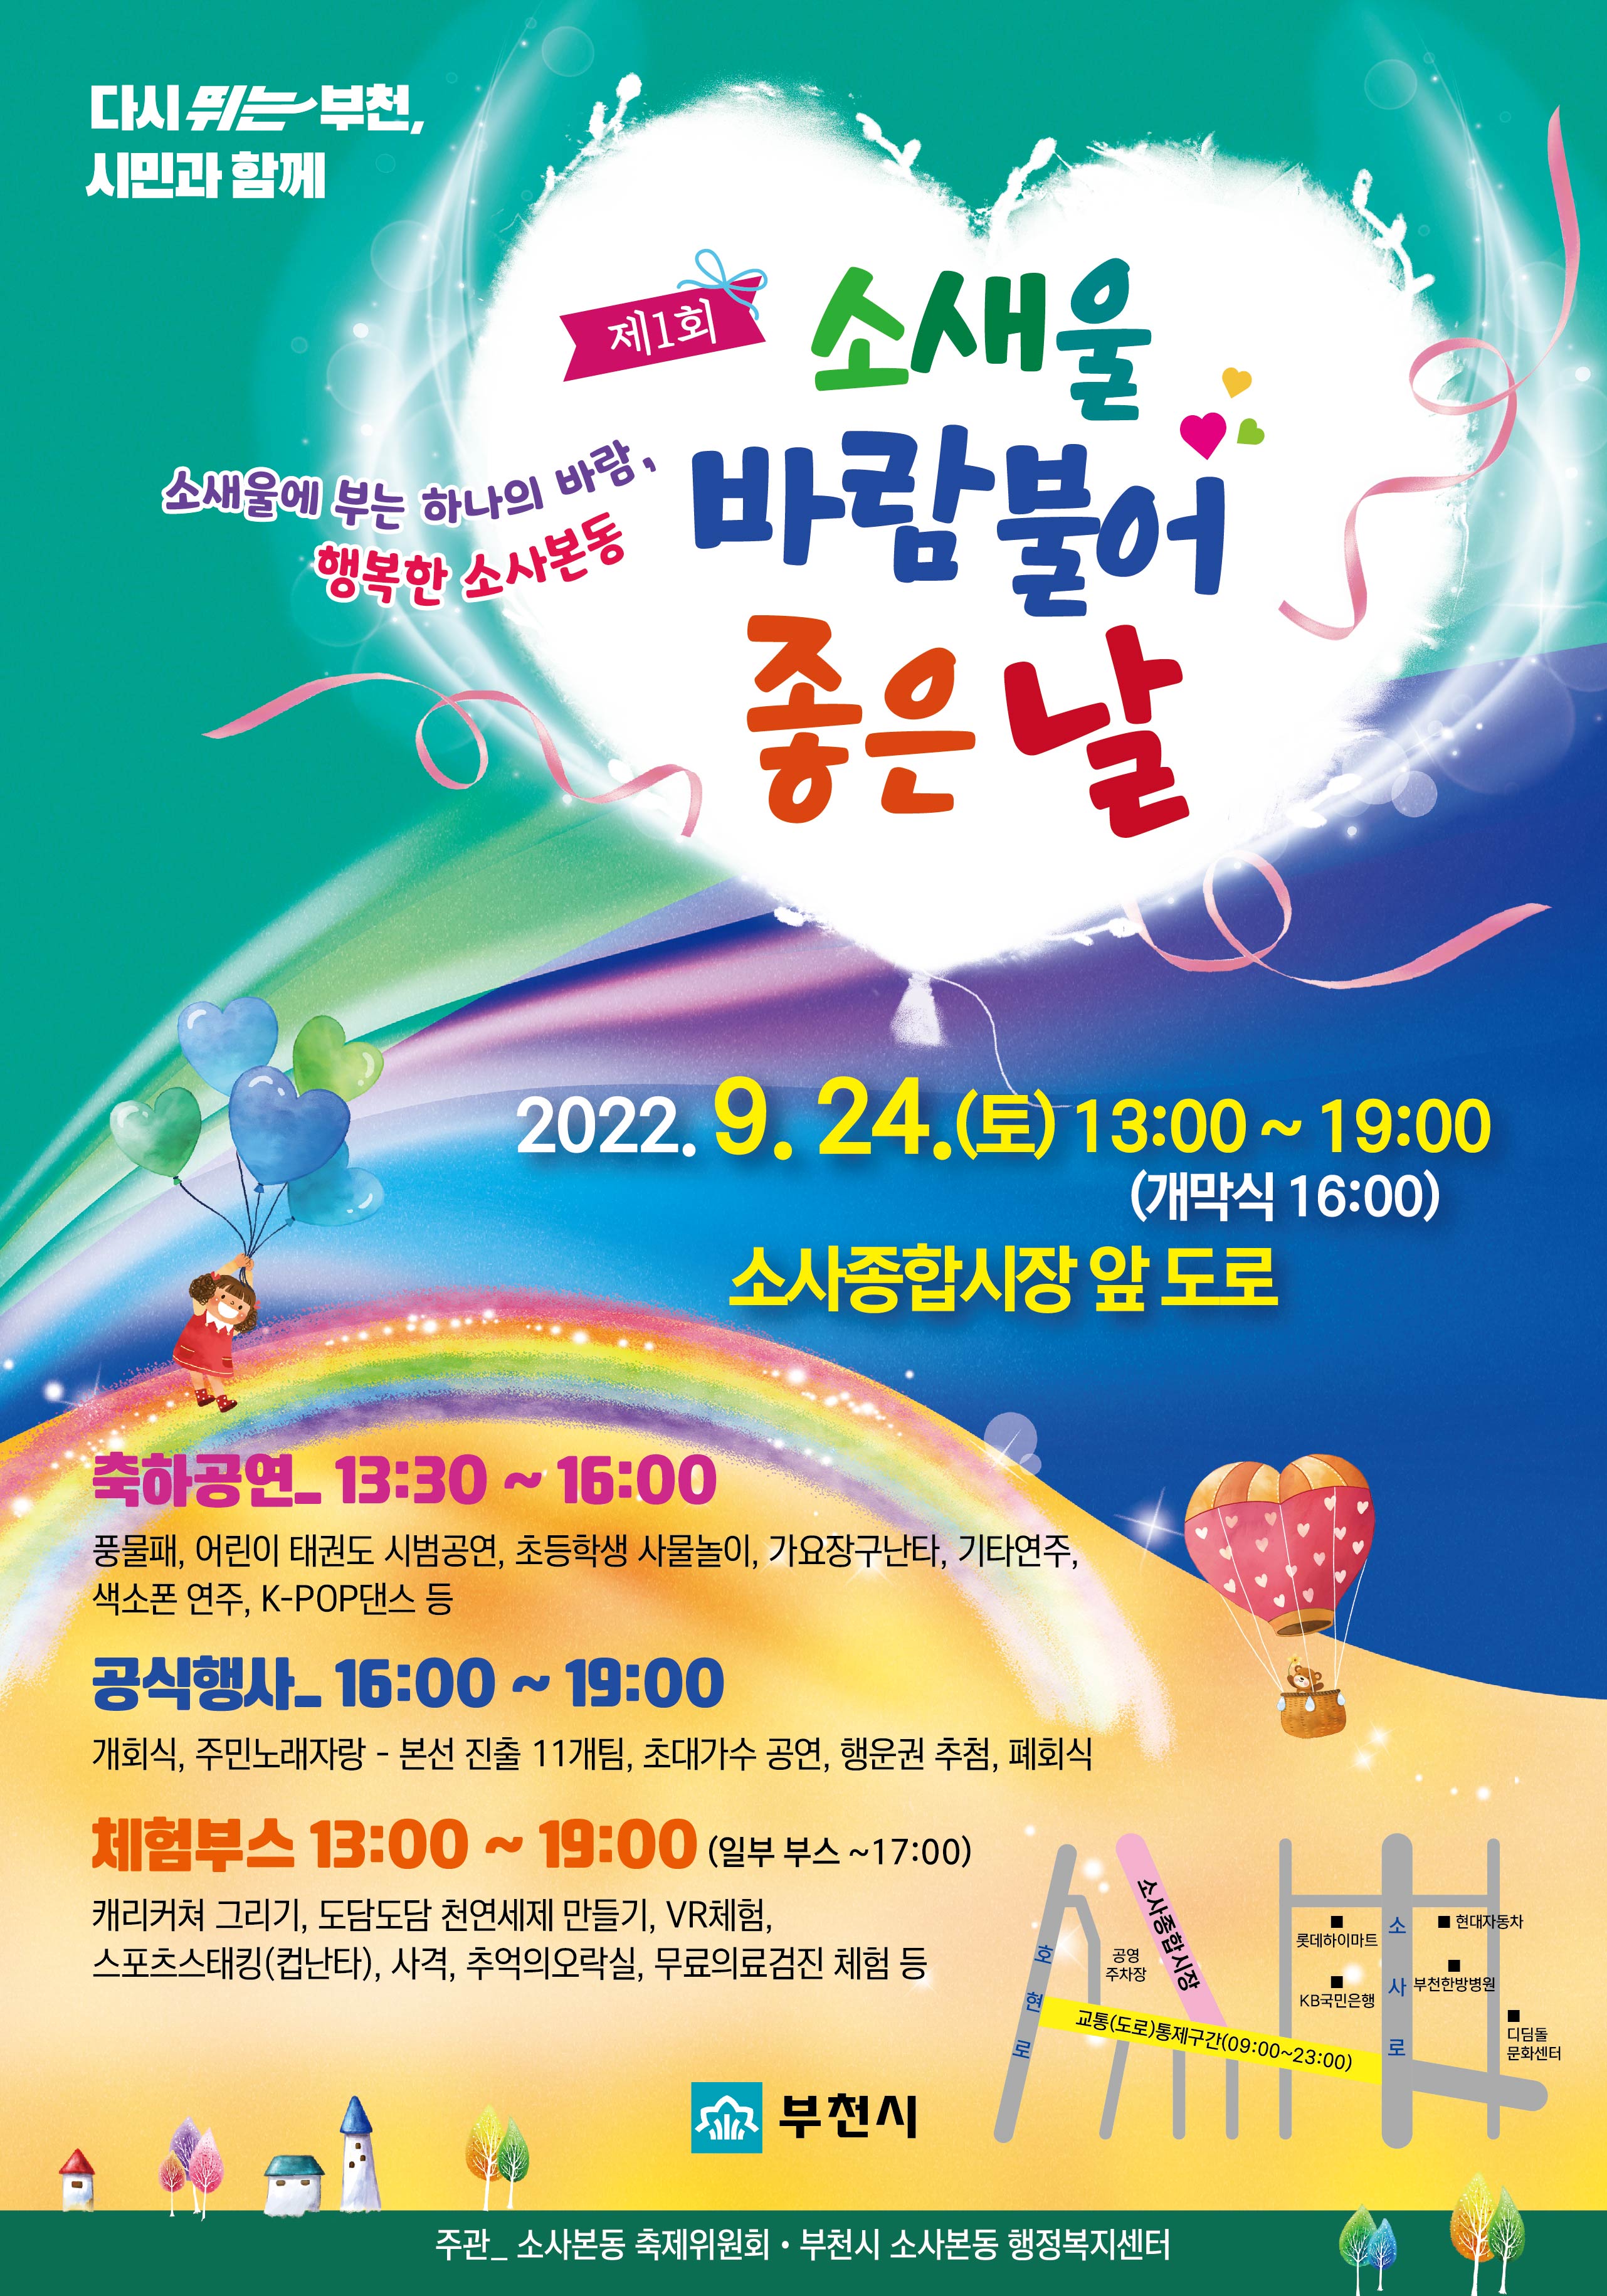 「제1회 소새울 바람 불어 좋은 날」 축제 공식 포스터